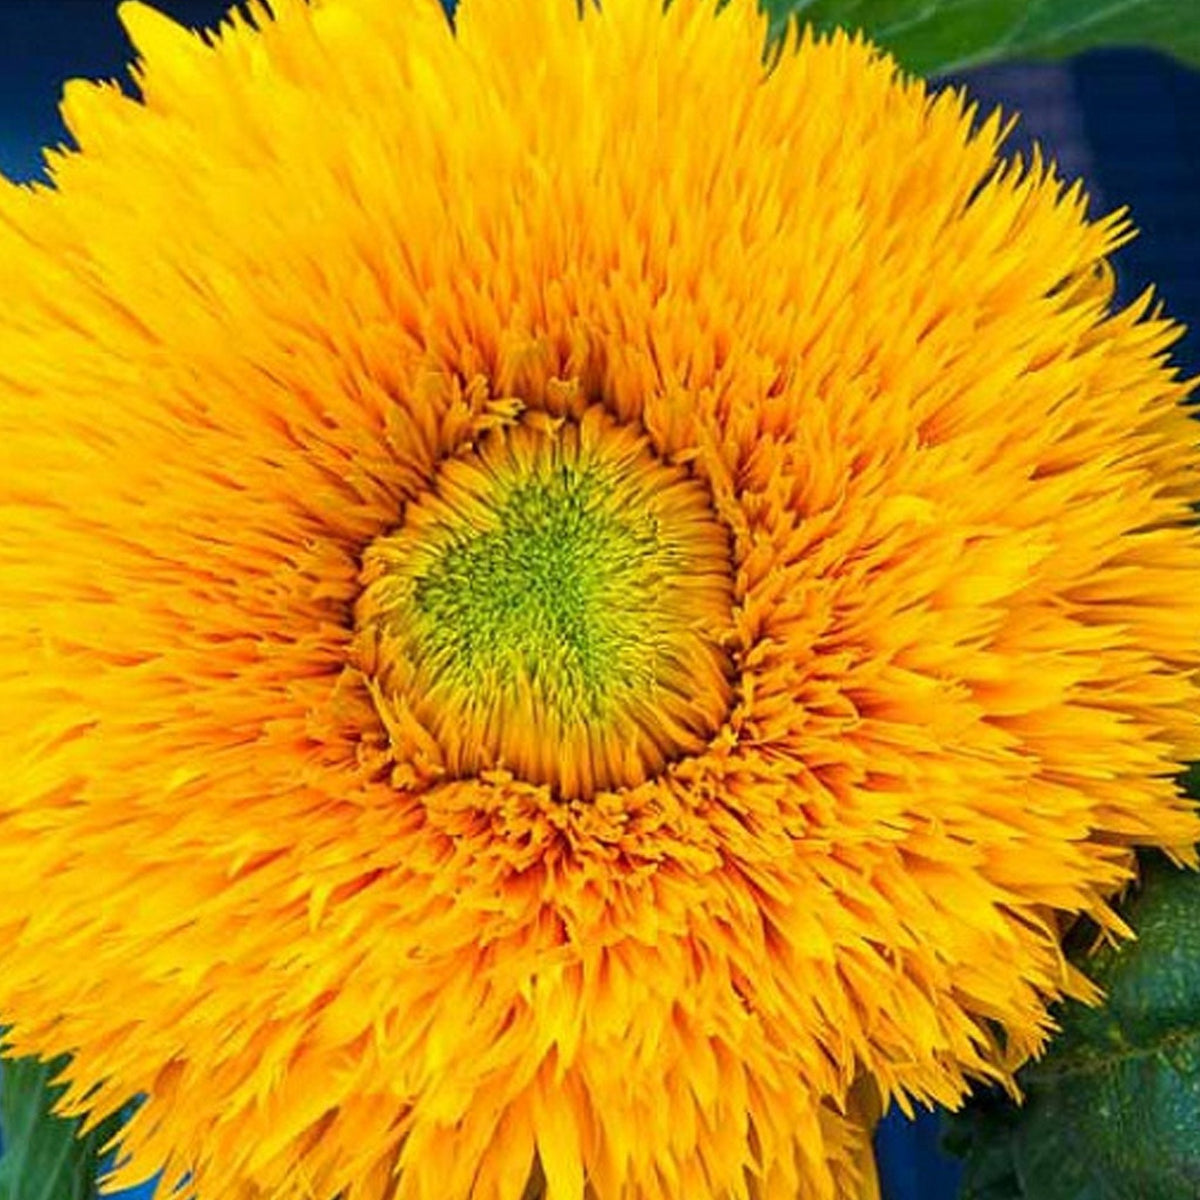 The Sunflower Growbar - Boo•kay ldn